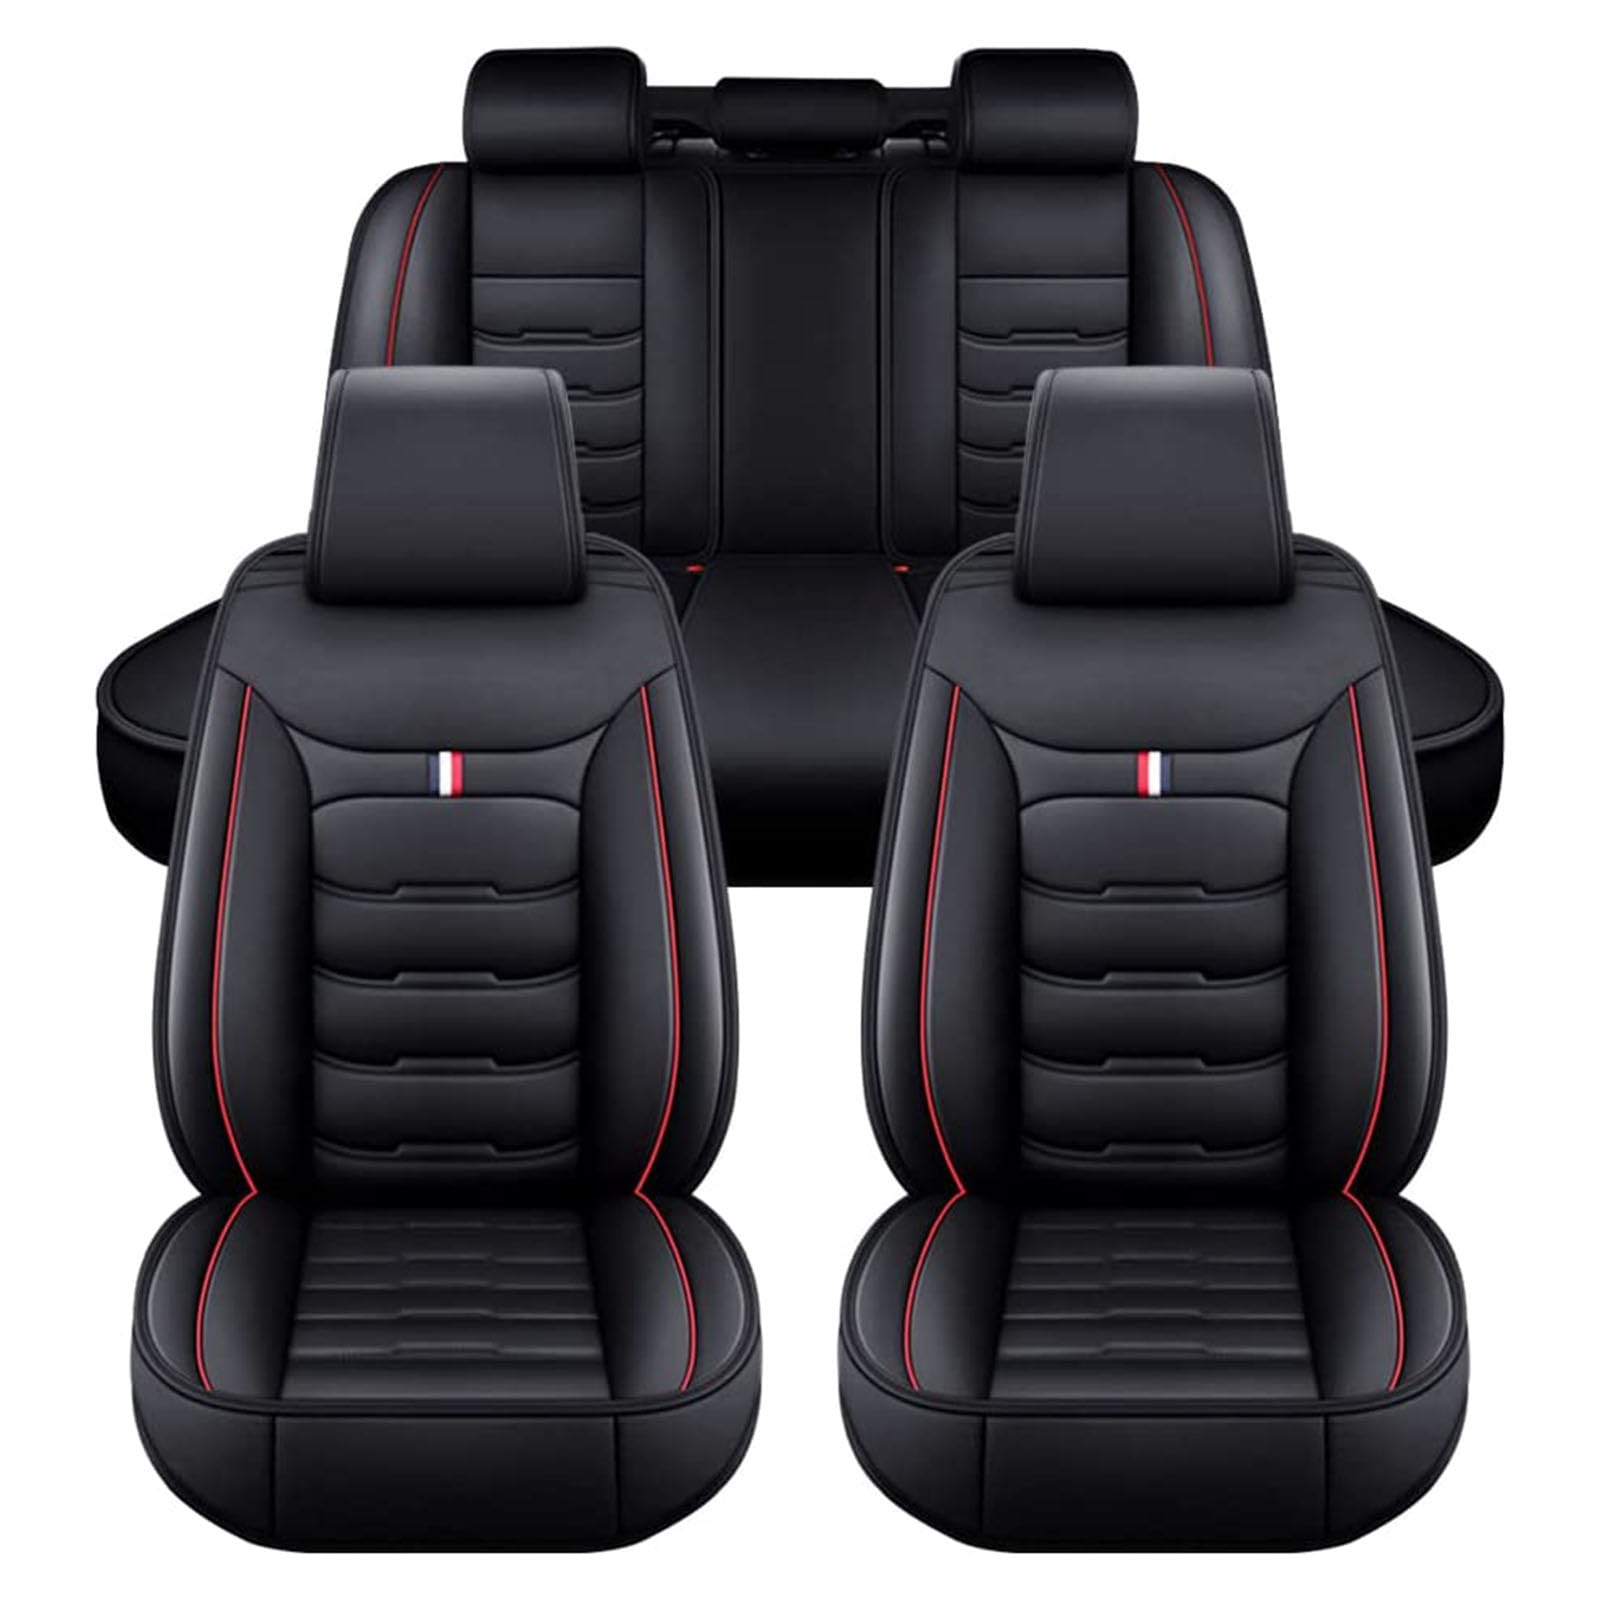 LECREA Auto Sitzbezüge Set für VW Sharan Caddy Caddy Maxi T Cross, 5 Sitzer PU Leder Autositzschoner, Wasserdichter Atmungsaktiver Autositzbezüge, Verschleißfestes Innenzubehör,A Black+Red von LECREA